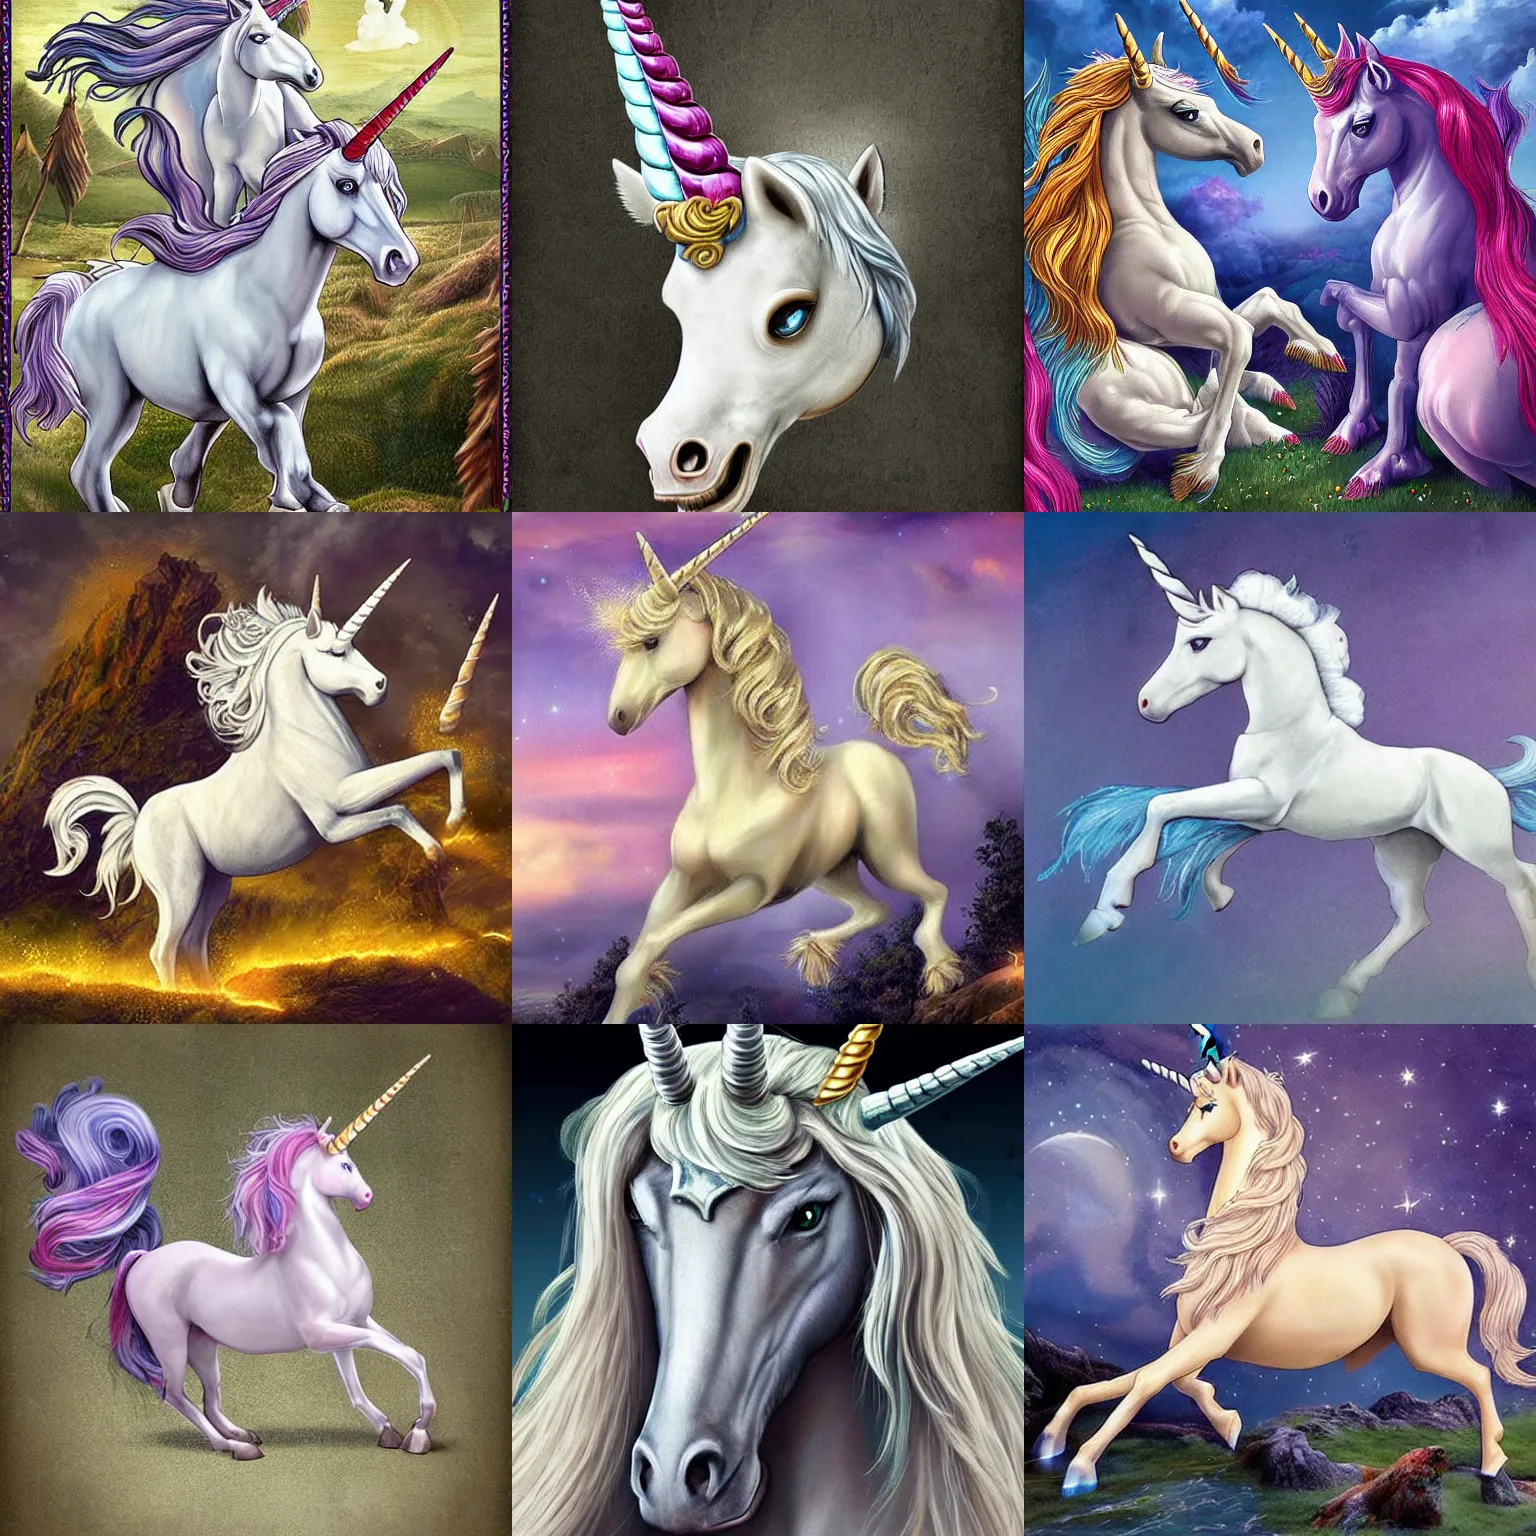 Prompt: very highly detailed realistic unicorn mythology